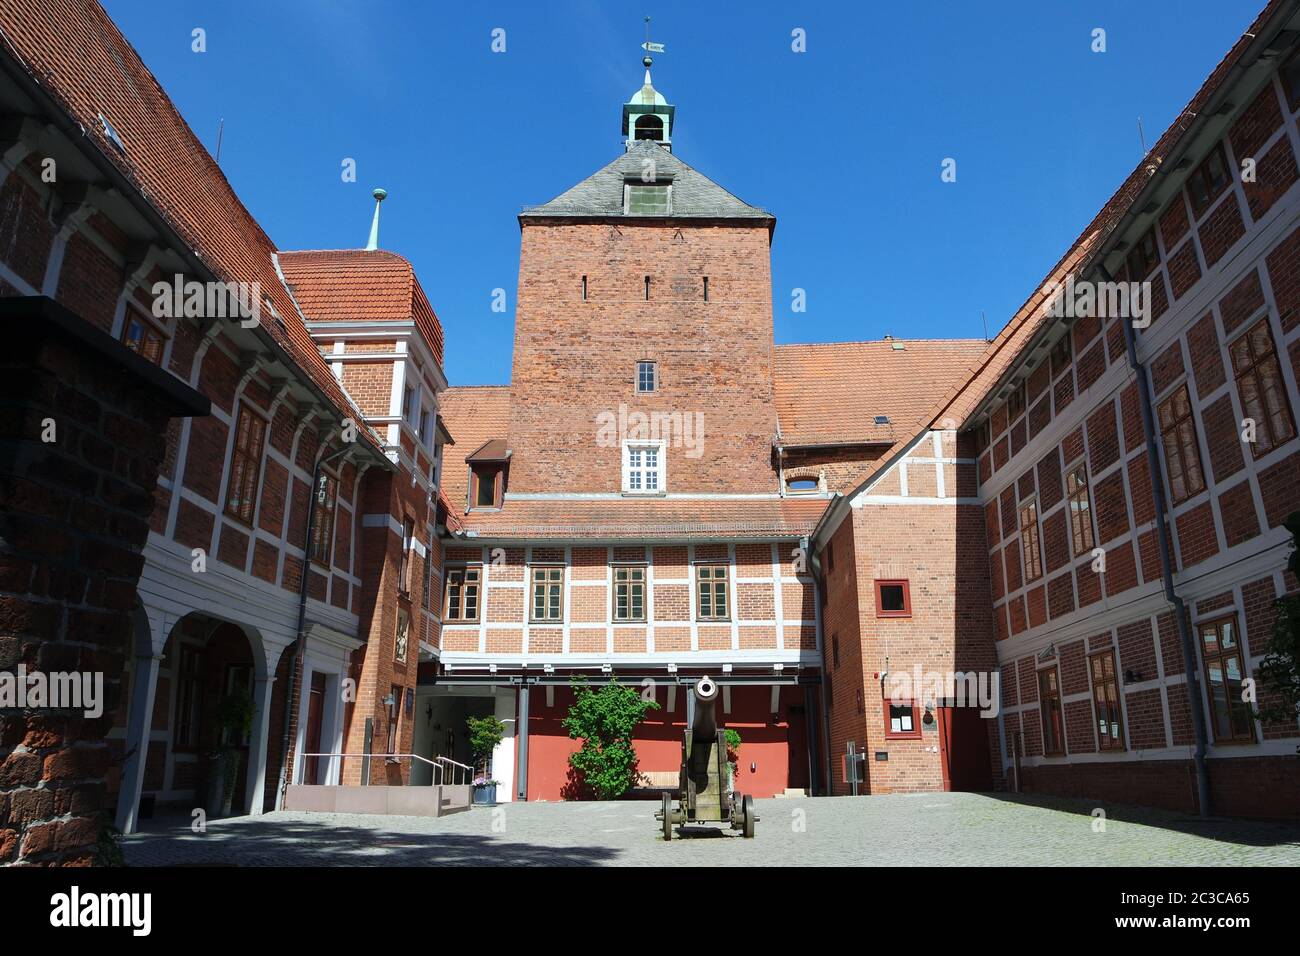 Castle in Winsen Luhe, Lower Saxony Stock Photo